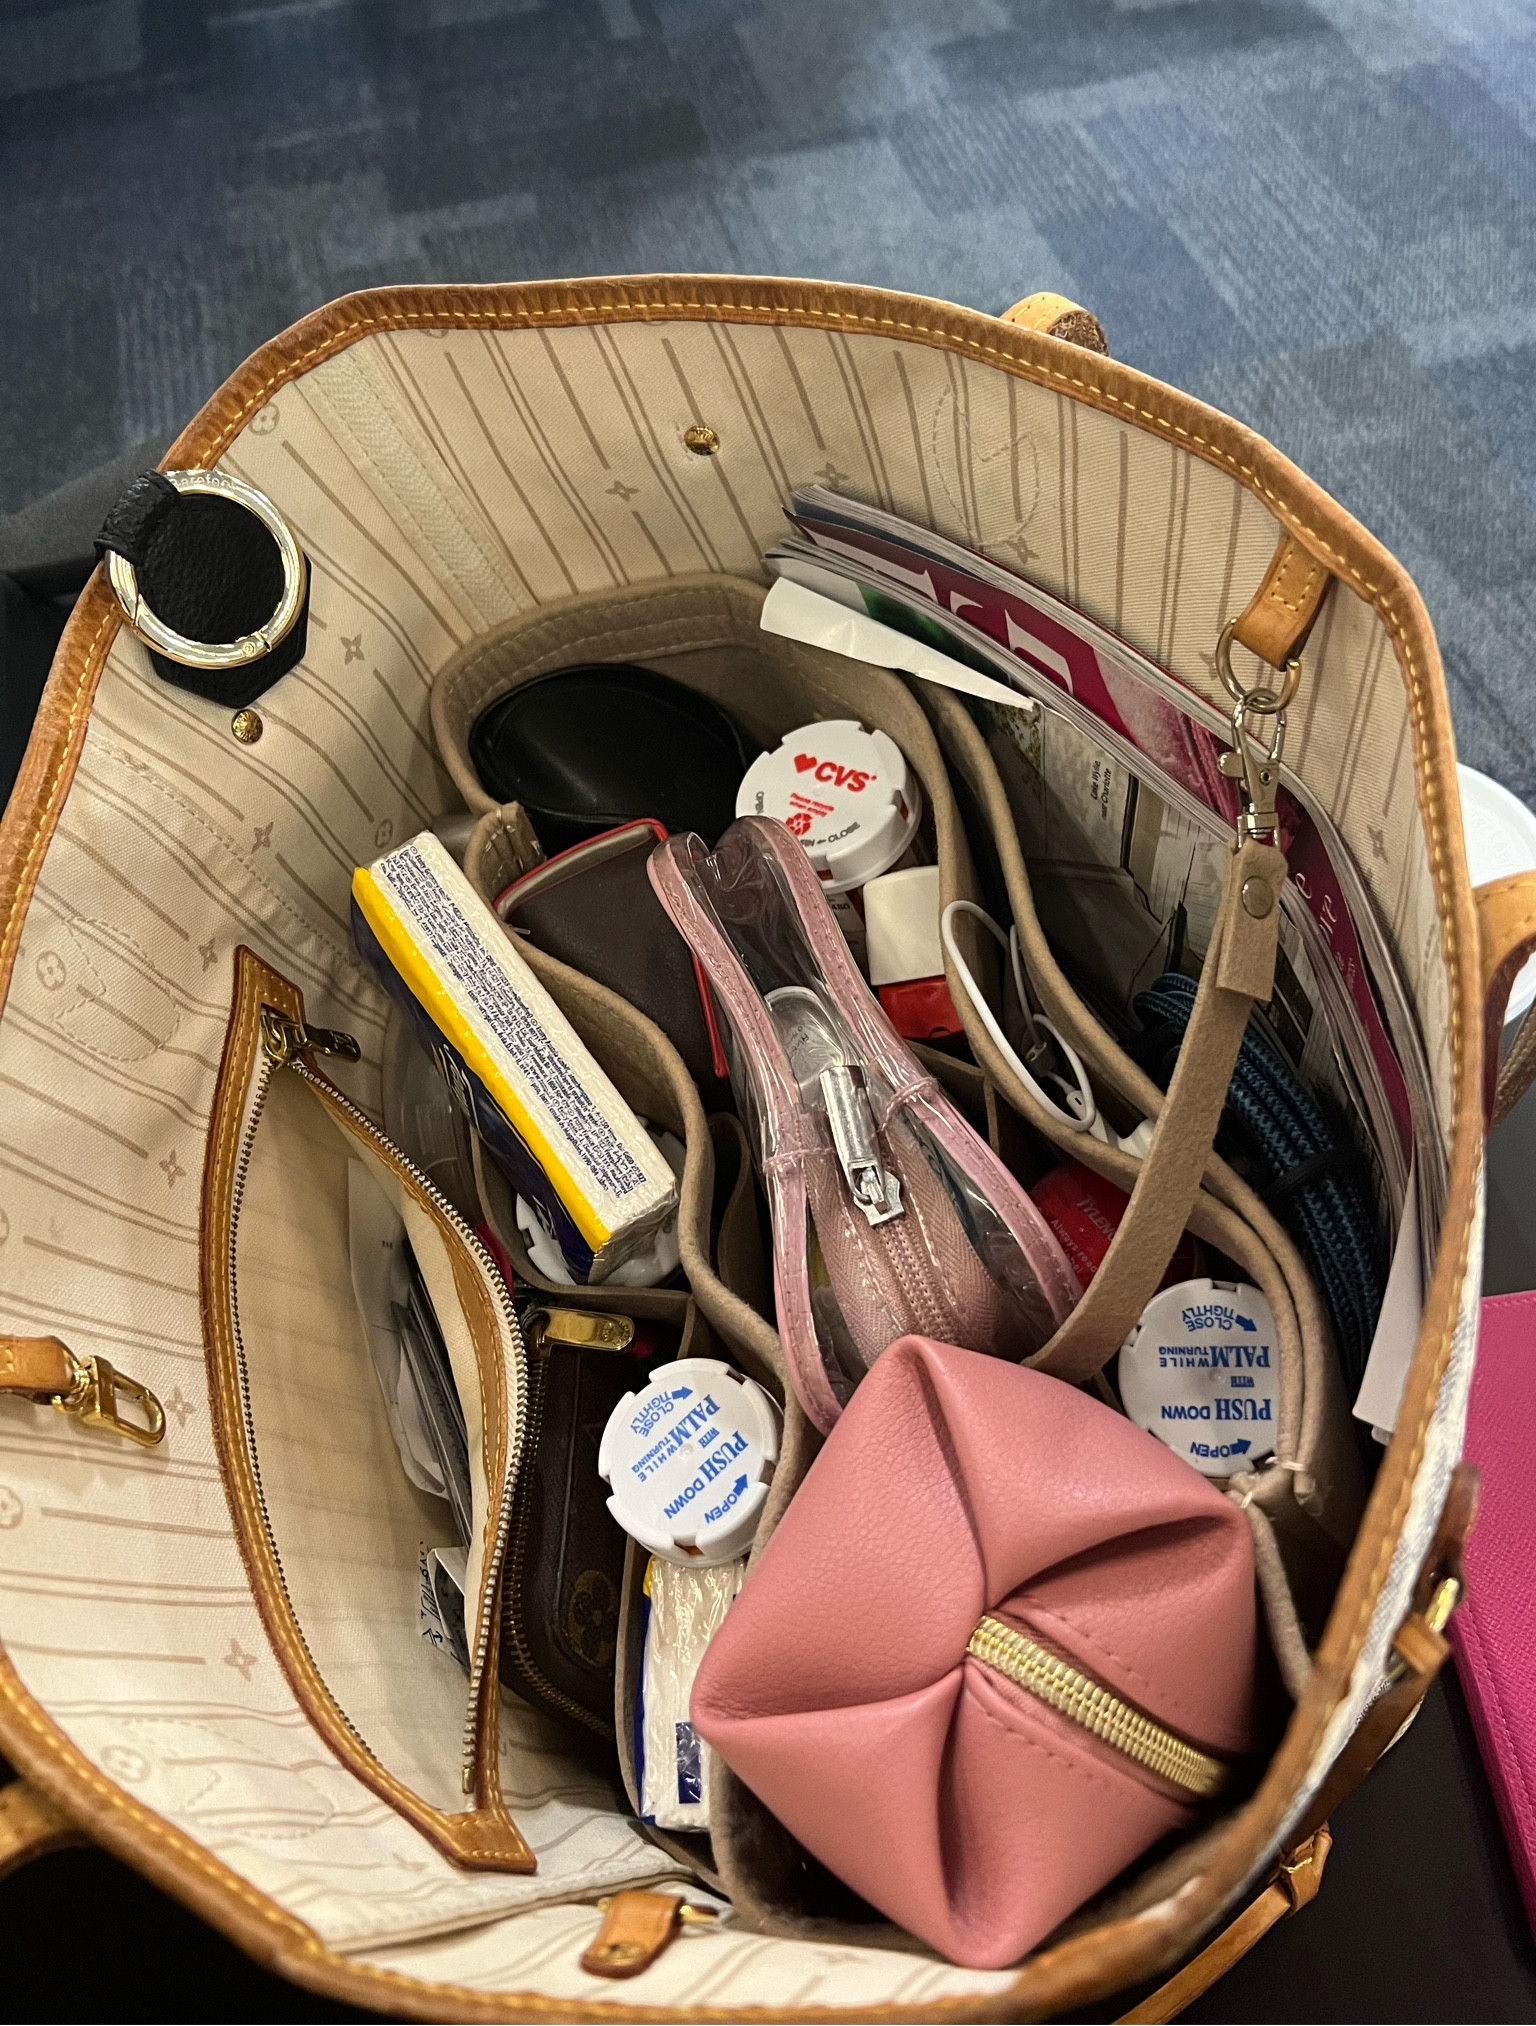 OMYSTYLE Purse Organizer Insert for Handbags, Felt Bag Organizer